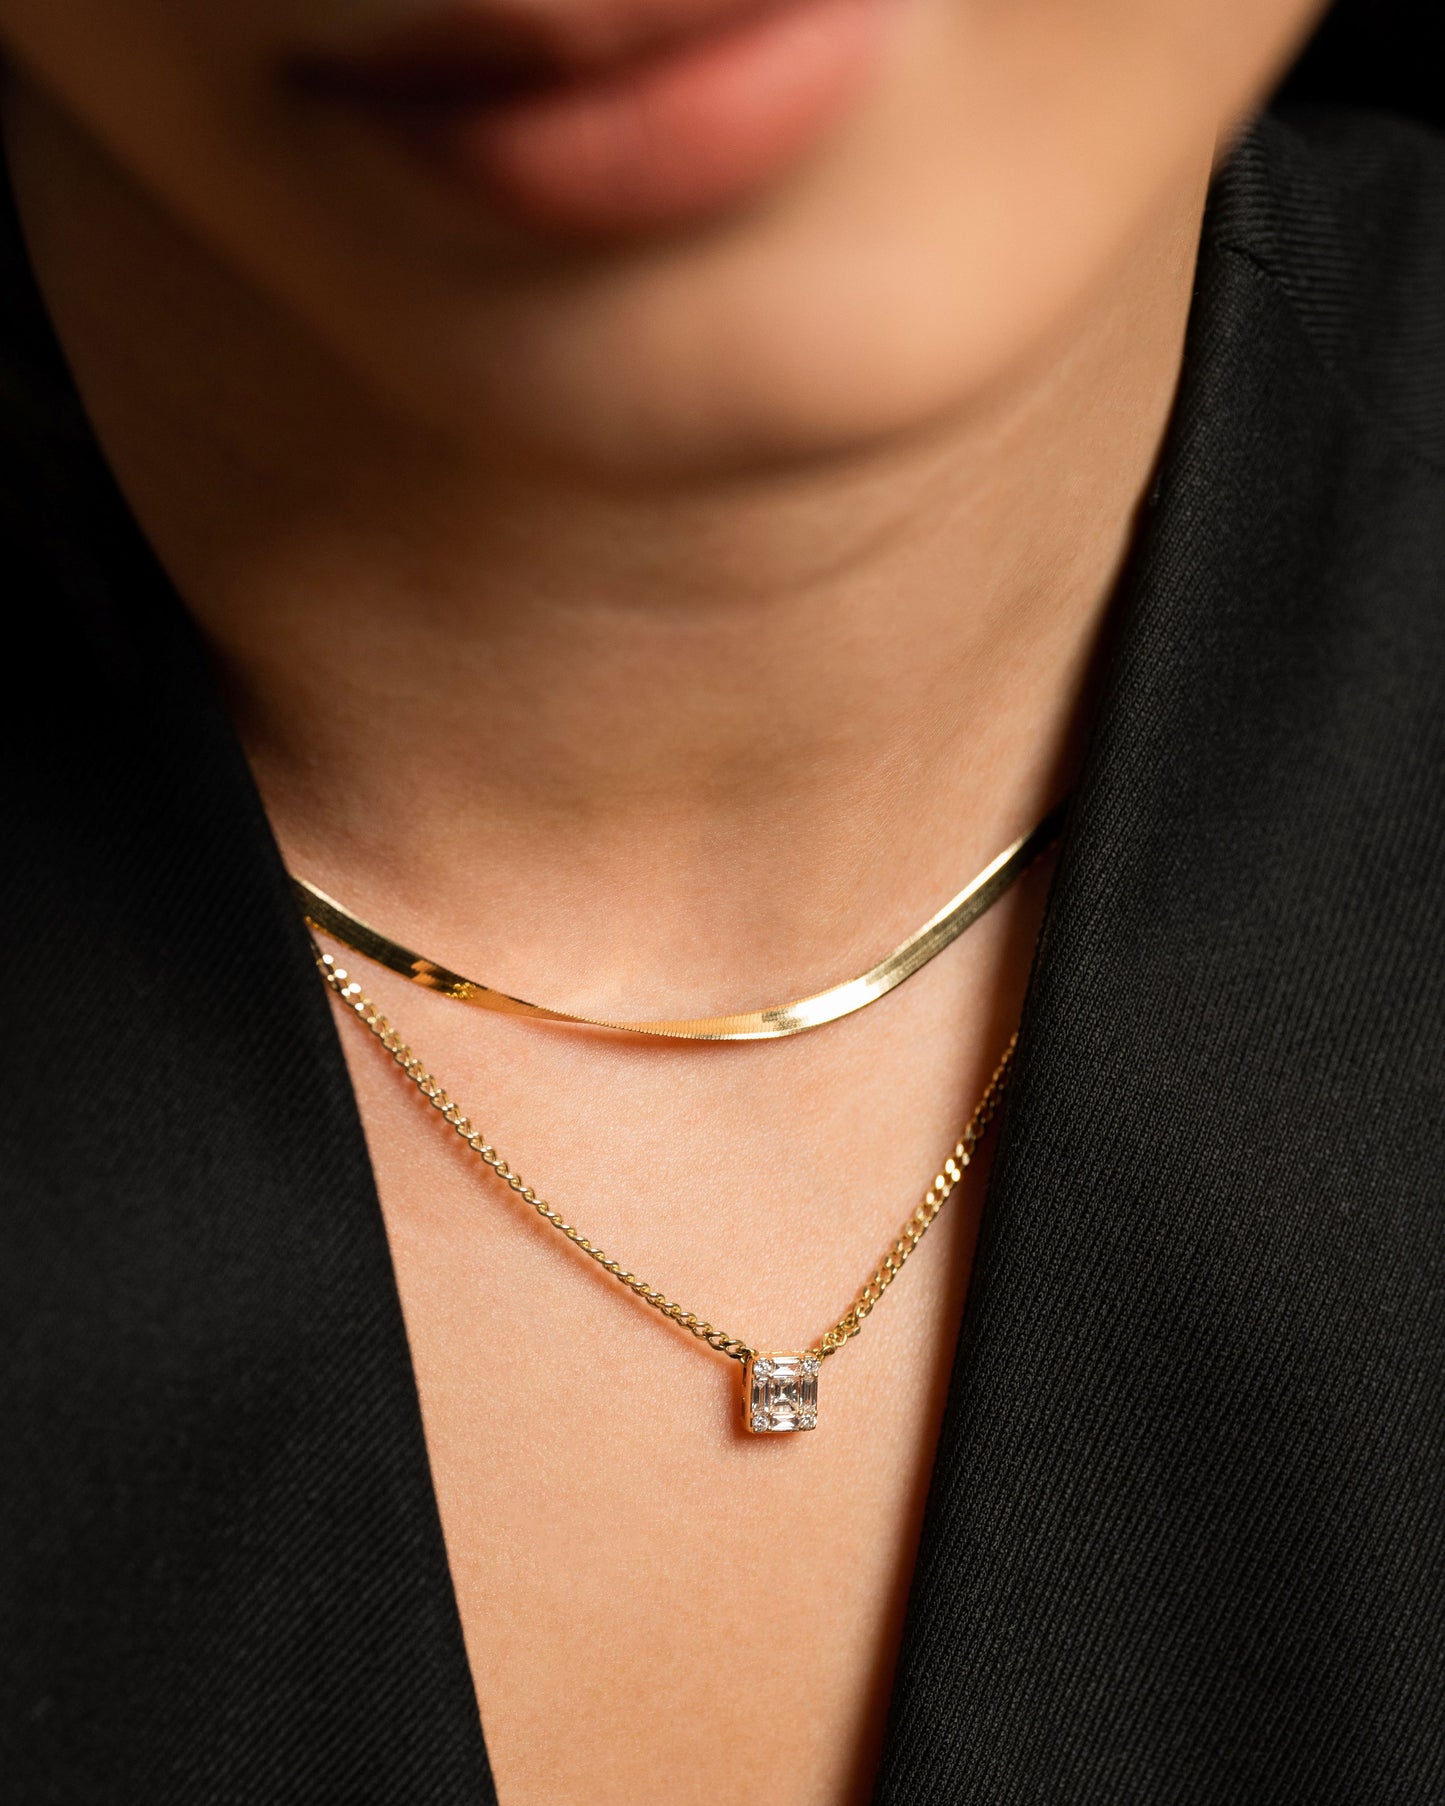 Una Square Diamond Cuban Chain Necklace